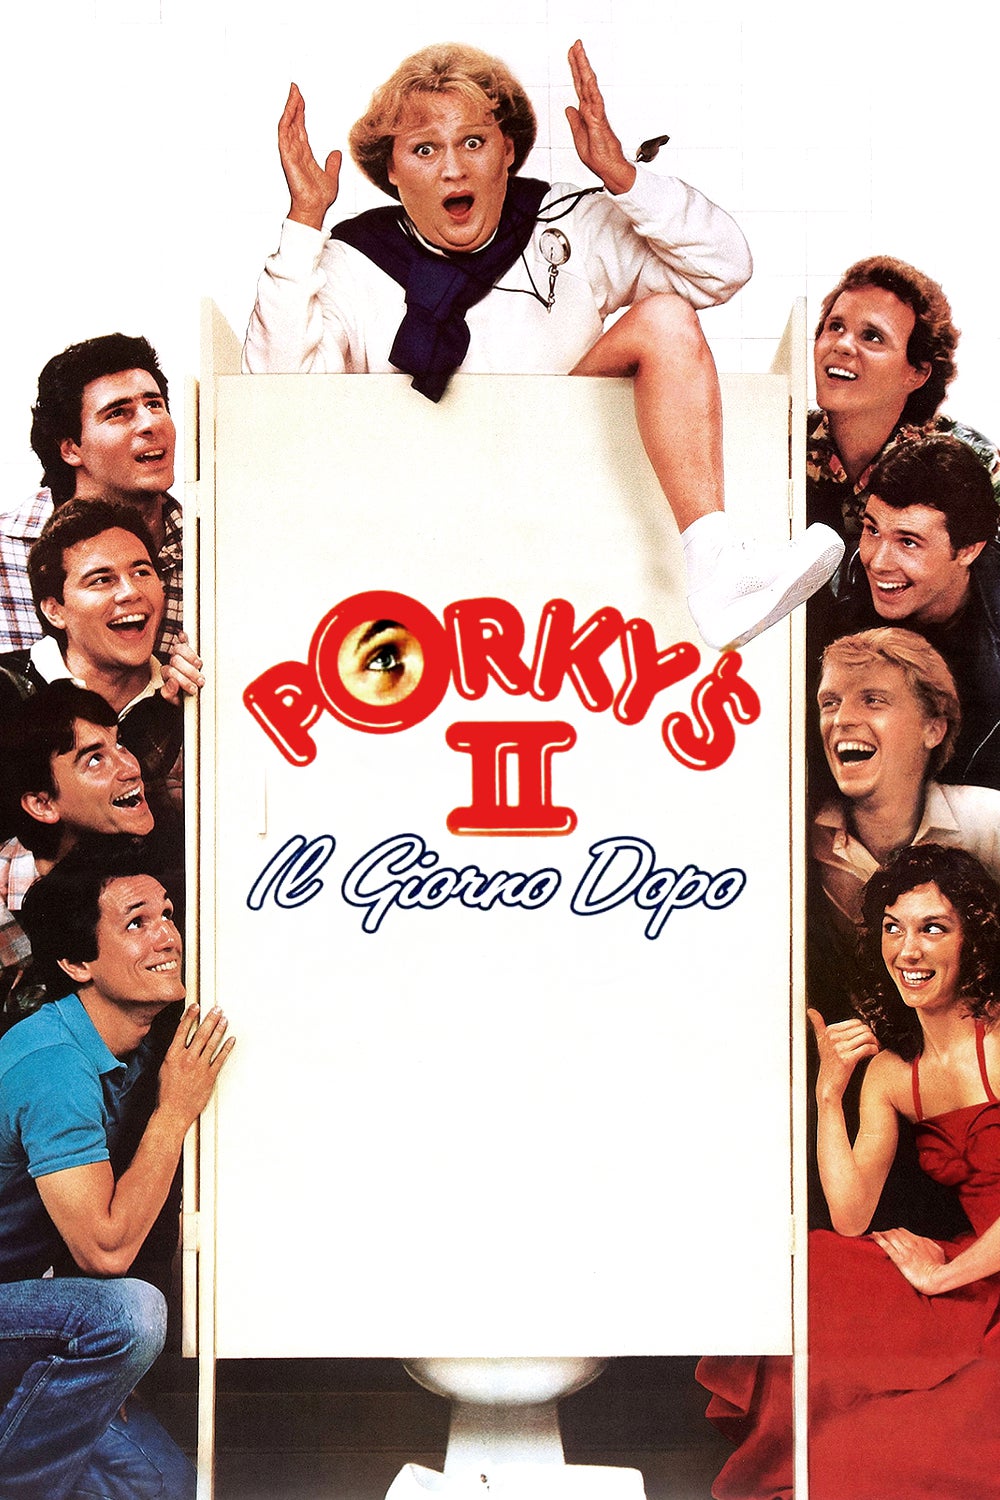 Porky’s II – Il giorno dopo [HD] (1983)